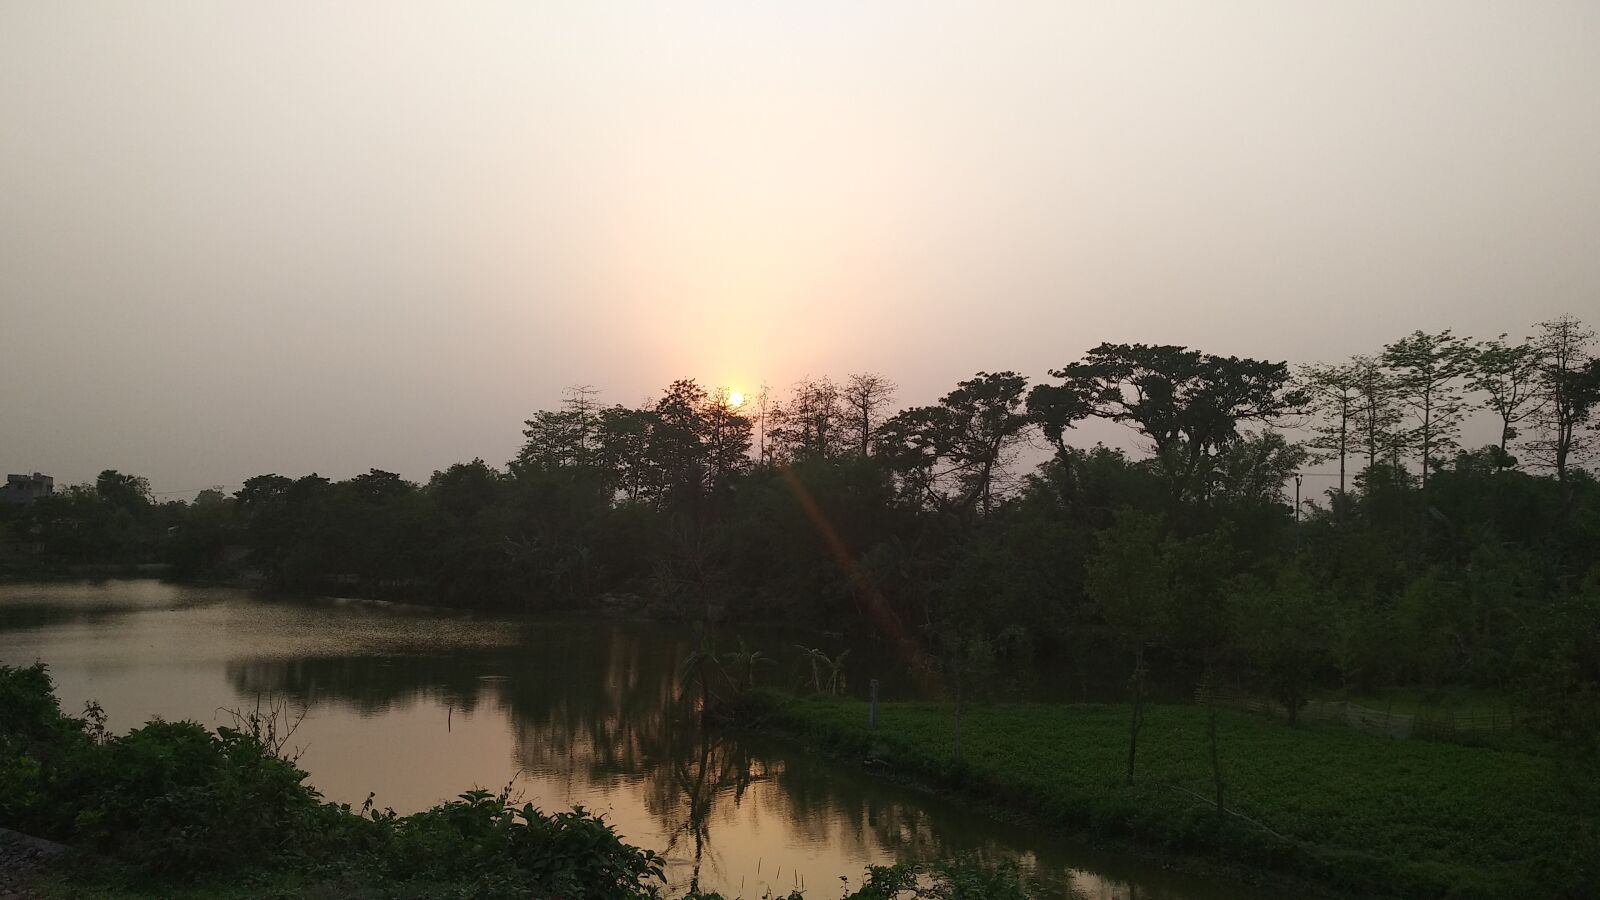 Xiaomi MI MAX 2 sample photo. Sunset, bengal, dusk photography